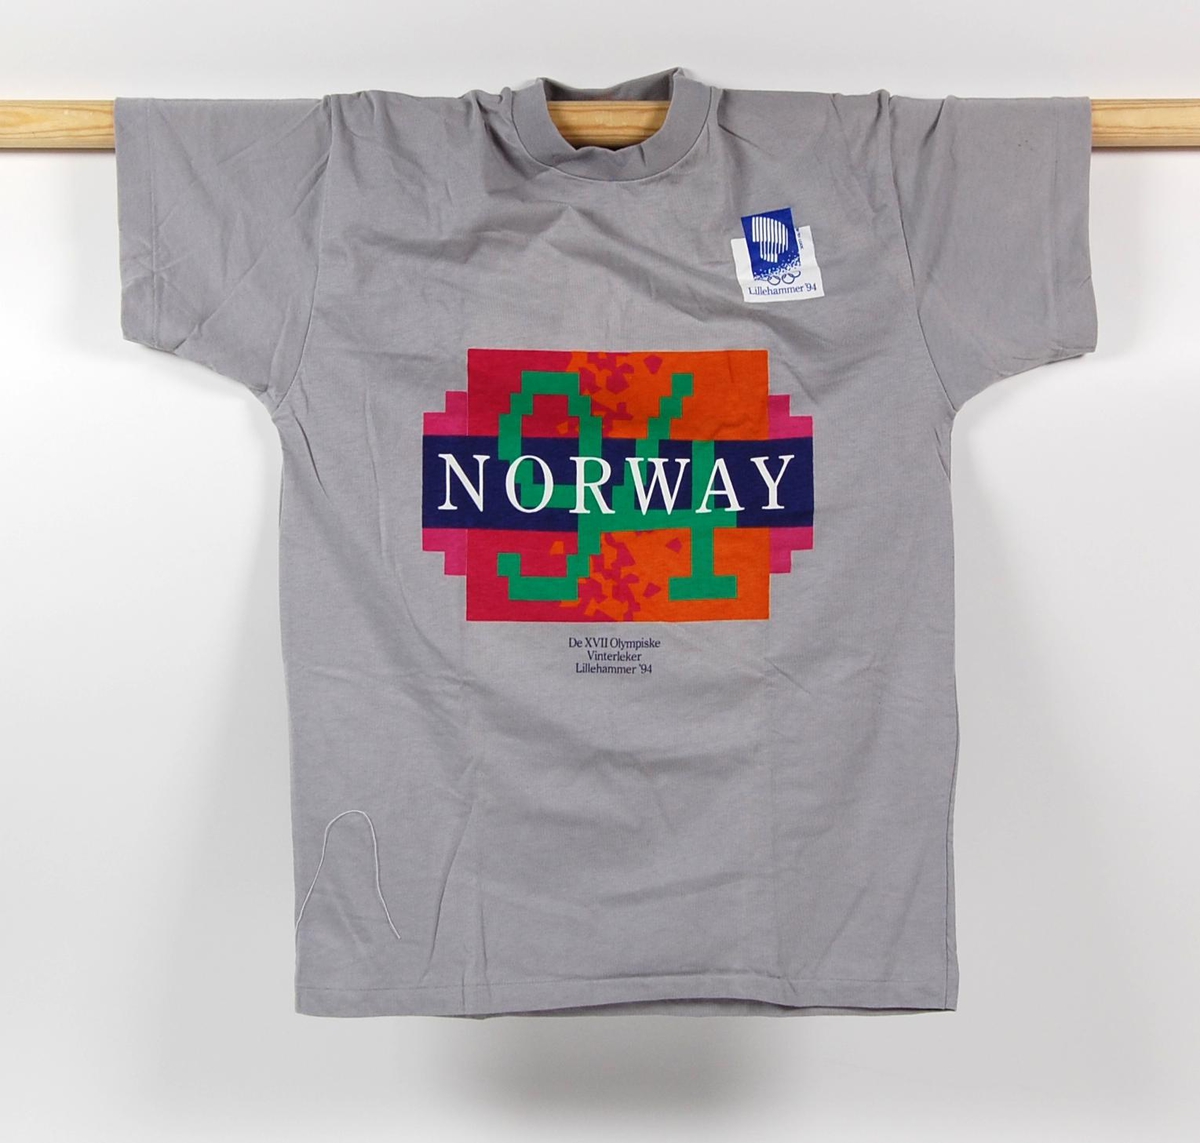 Grå t-skjorte med 2 logoer for de olympiske vinterleker på Lillehammer i 1994. Den ene logoen er flerfarget og har krystallmønster. Krystallmønsteret inngikk i LOOCs designprogram.